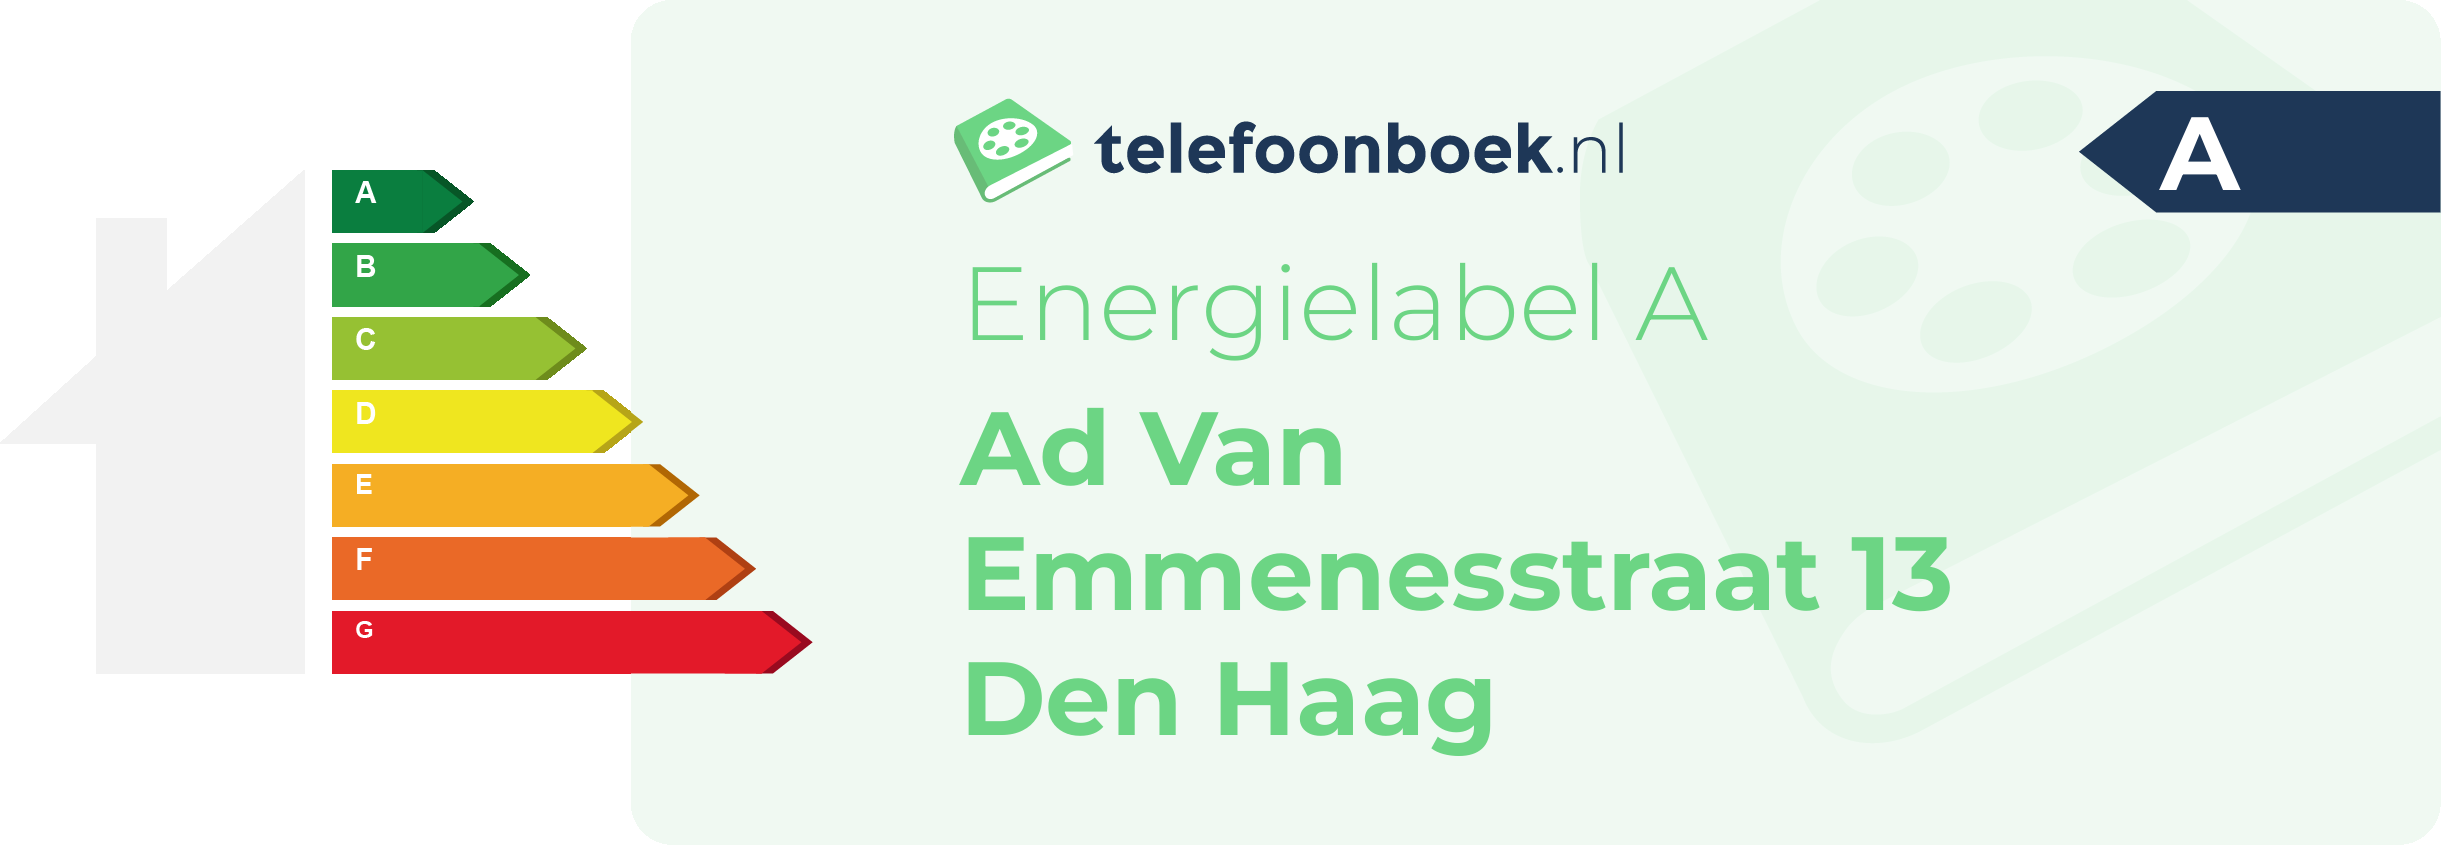 Energielabel Ad Van Emmenesstraat 13 Den Haag